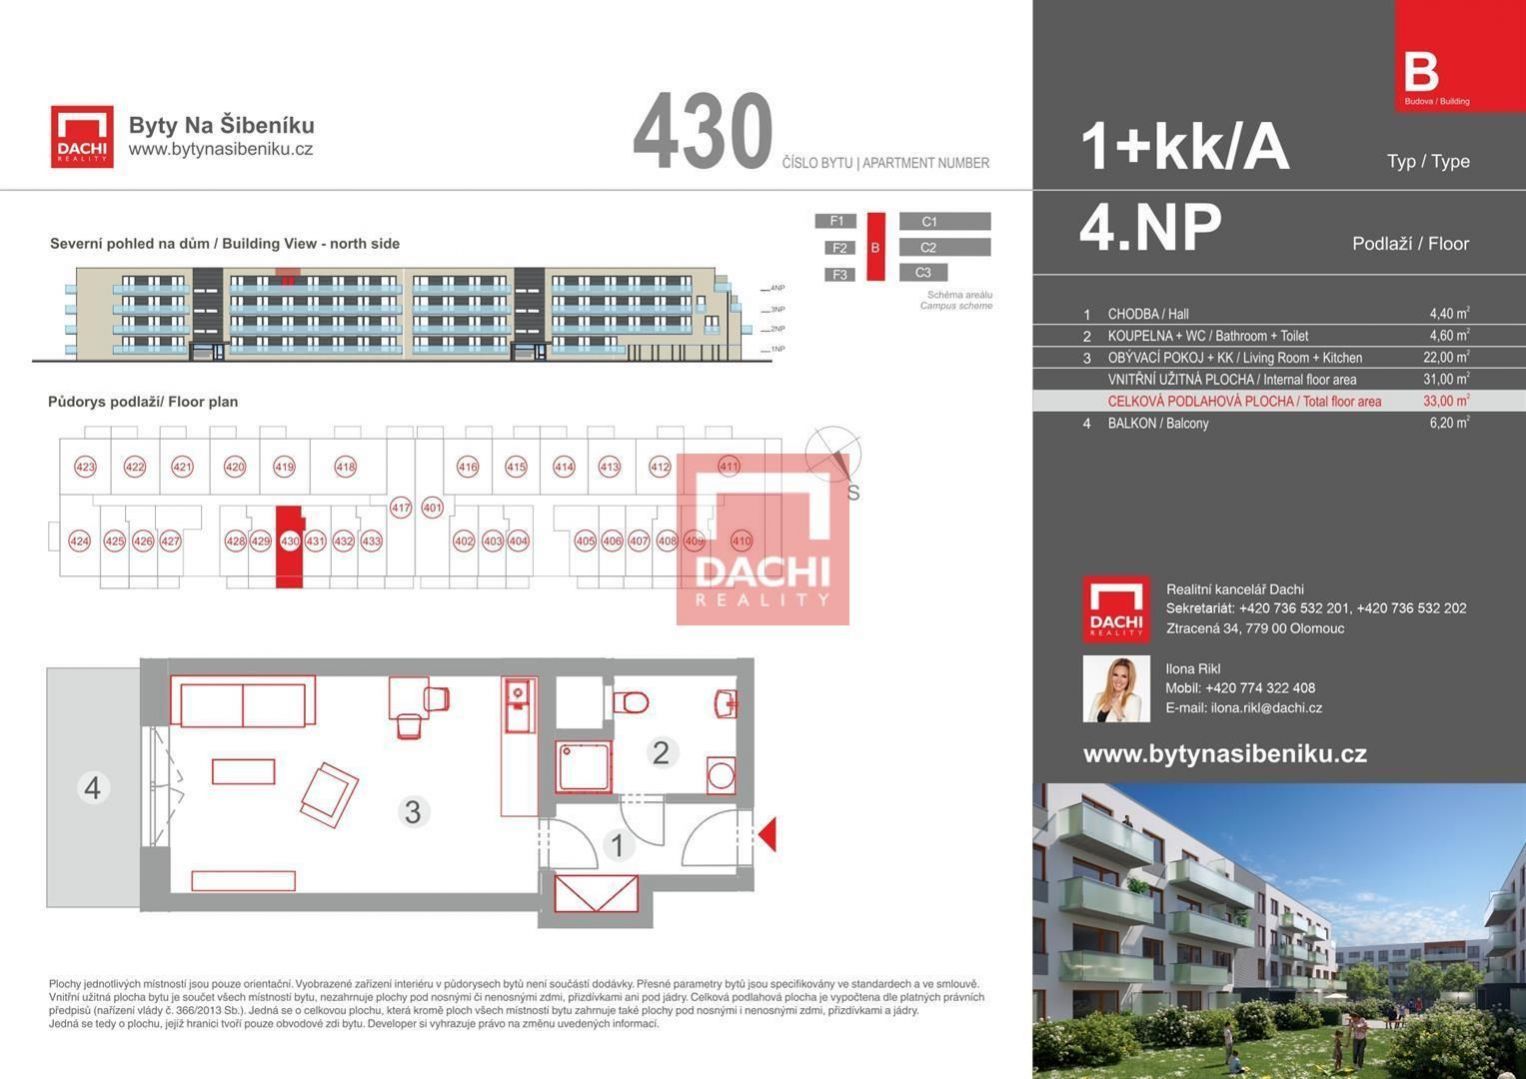 Prodej novostavby bytu B.430  1+kk 33,0m s balkonem 6,20m, Olomouc, Byty Na Šibeníku II.etapa, obrázek č. 3